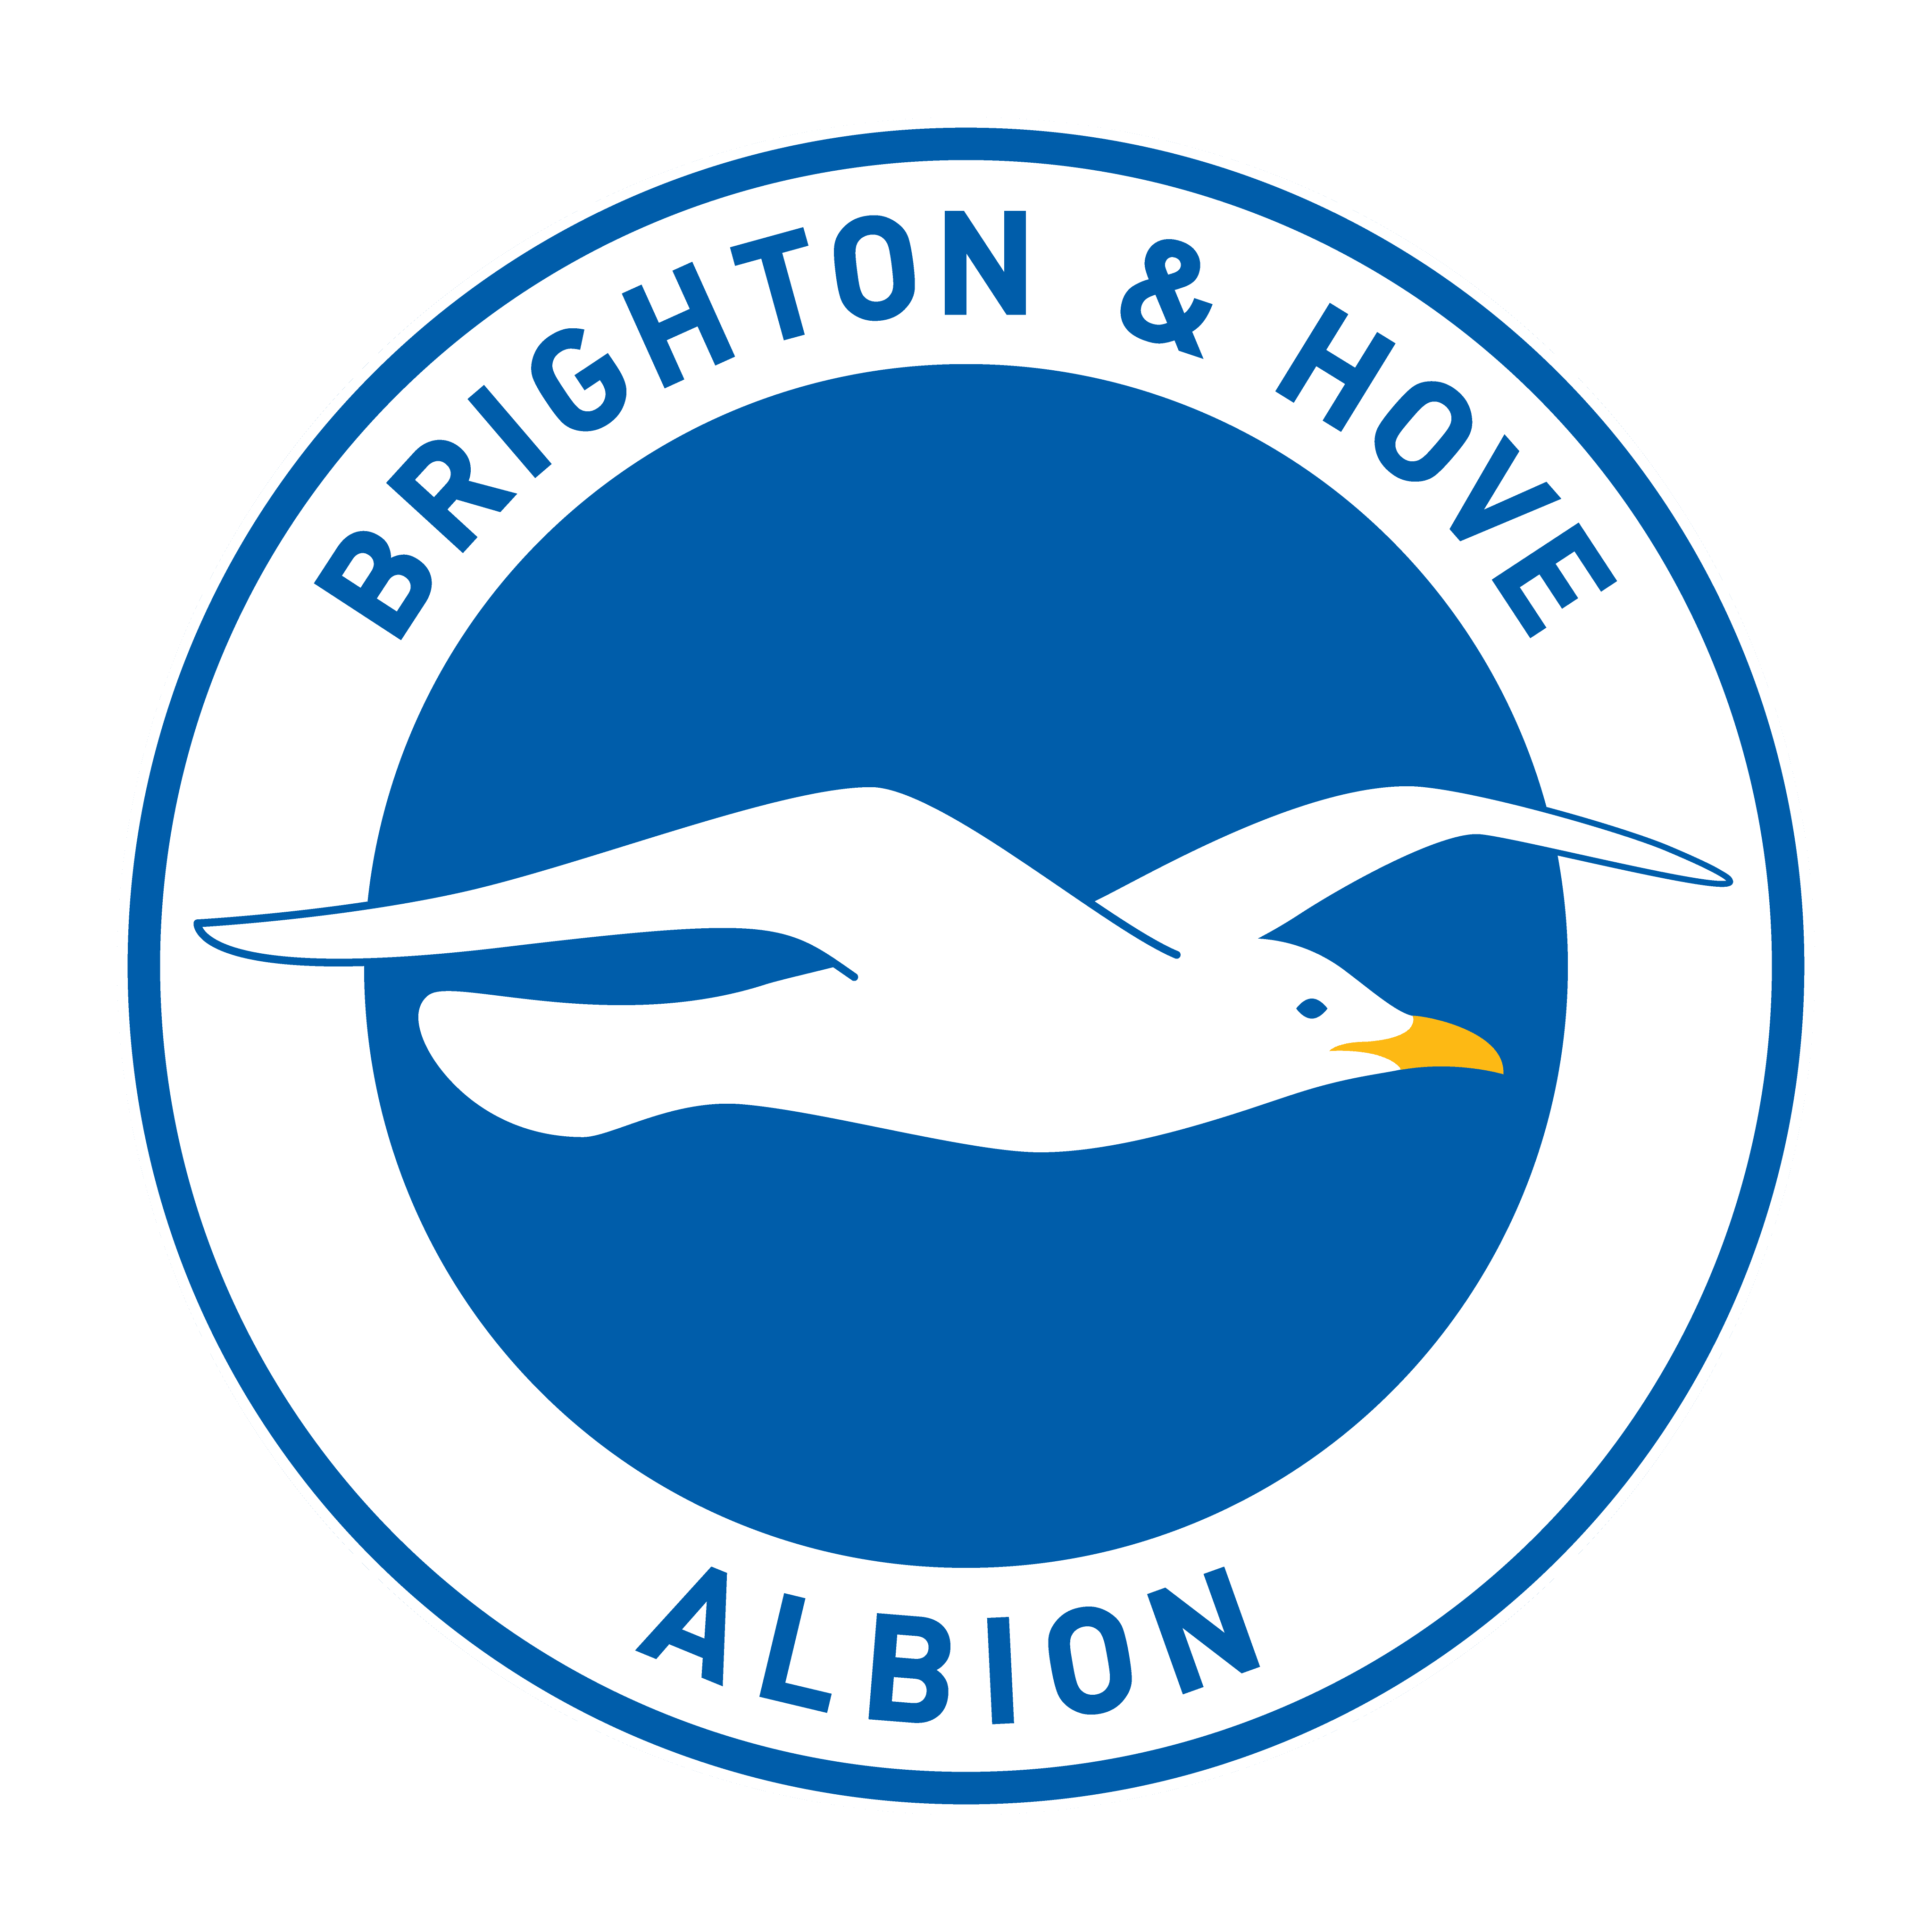 logo brighton hove albion football club